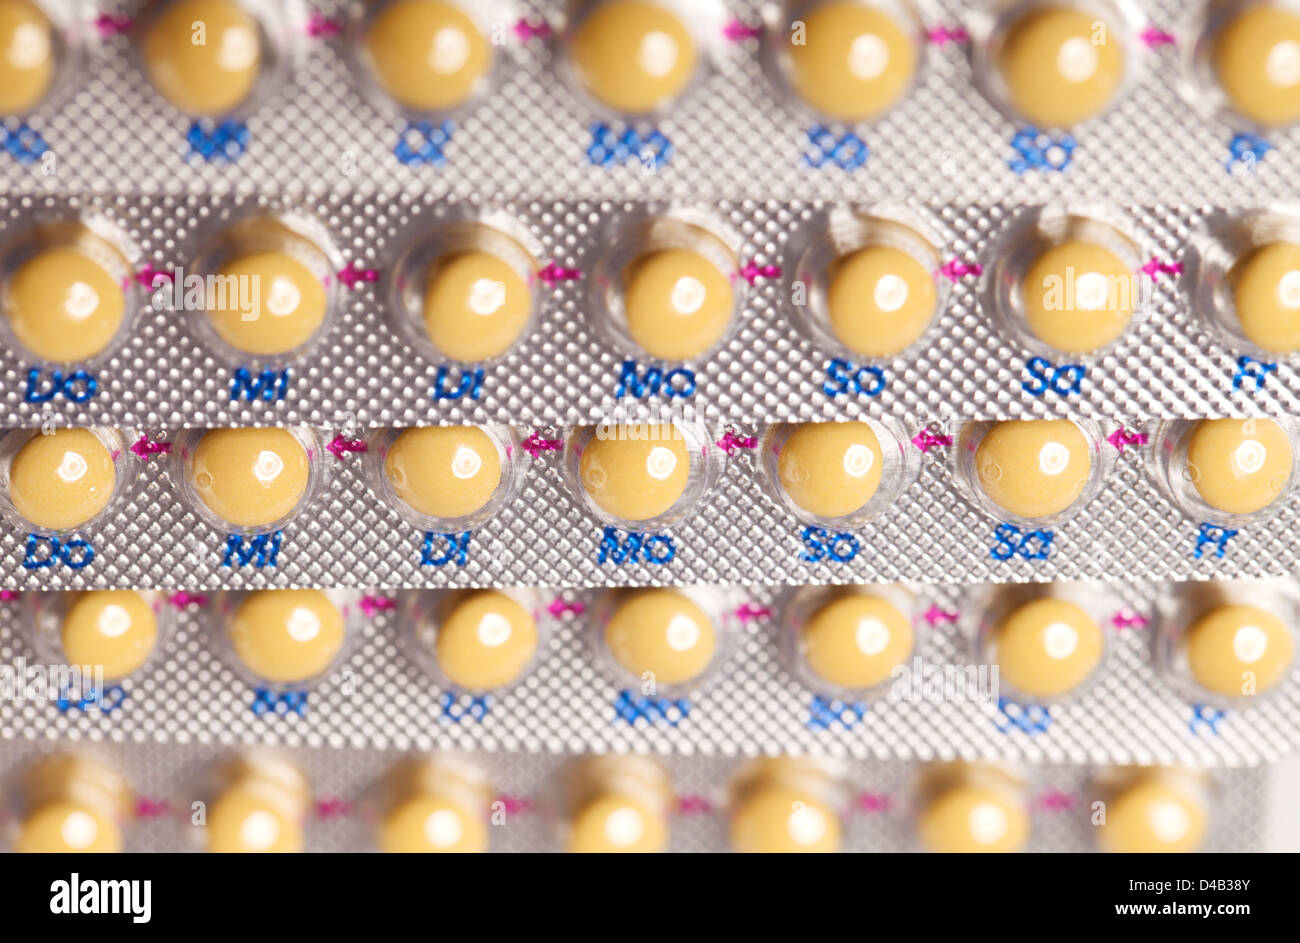 Pilule contraceptive. comprimés (pilules) Contexte Banque D'Images